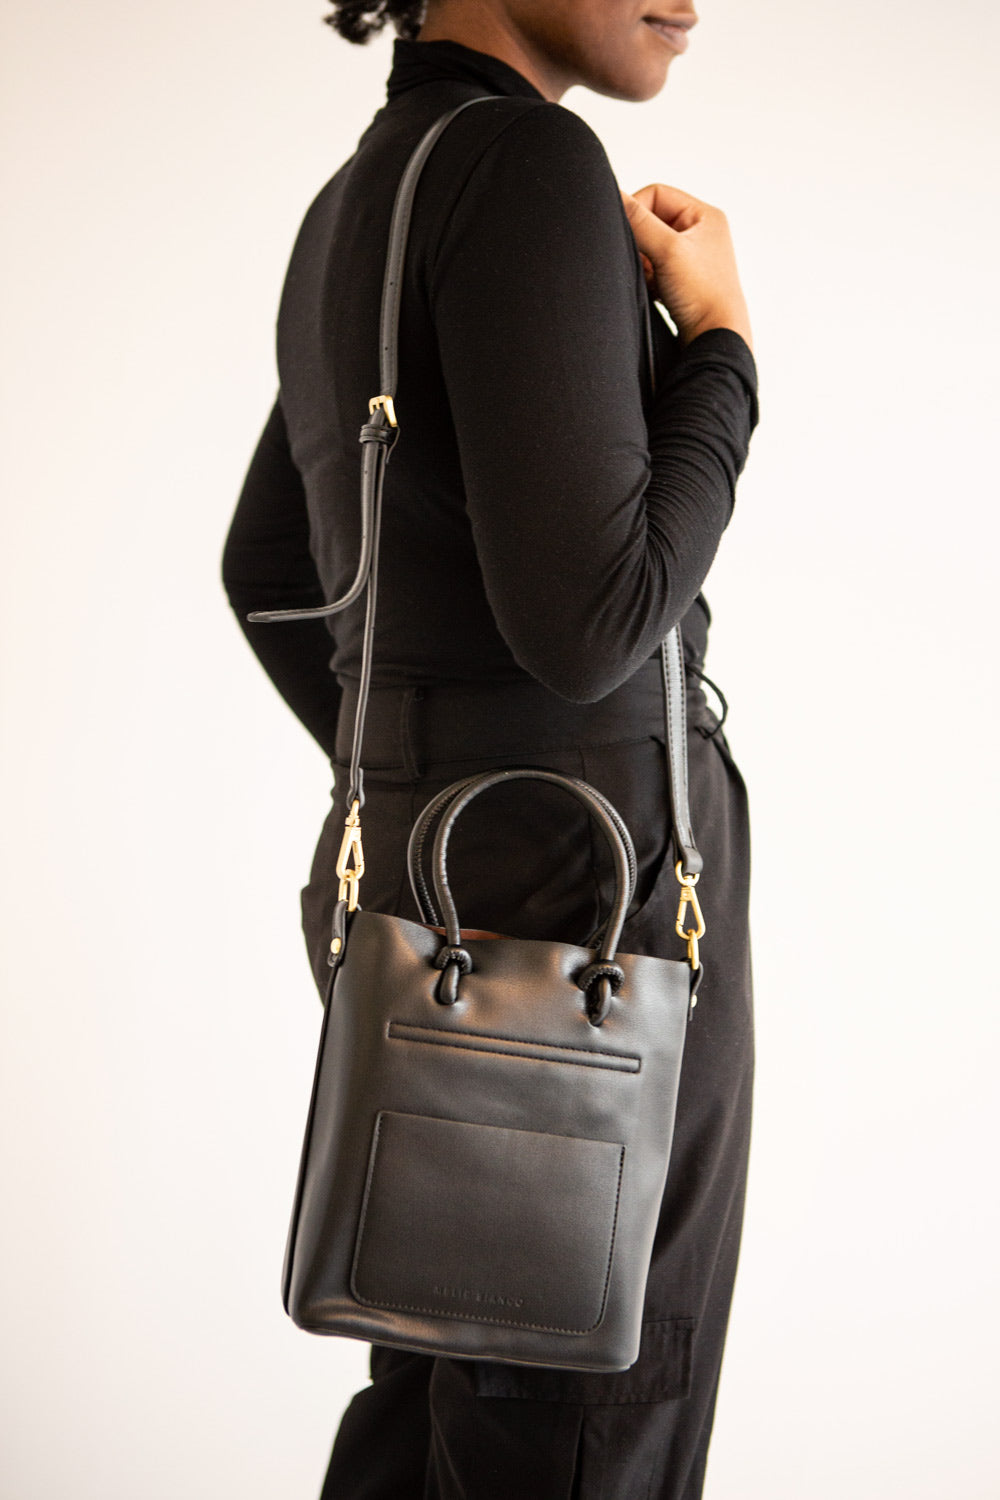 Linrot Black Small Vegan Leather Tote Bag | La petite garçonne model